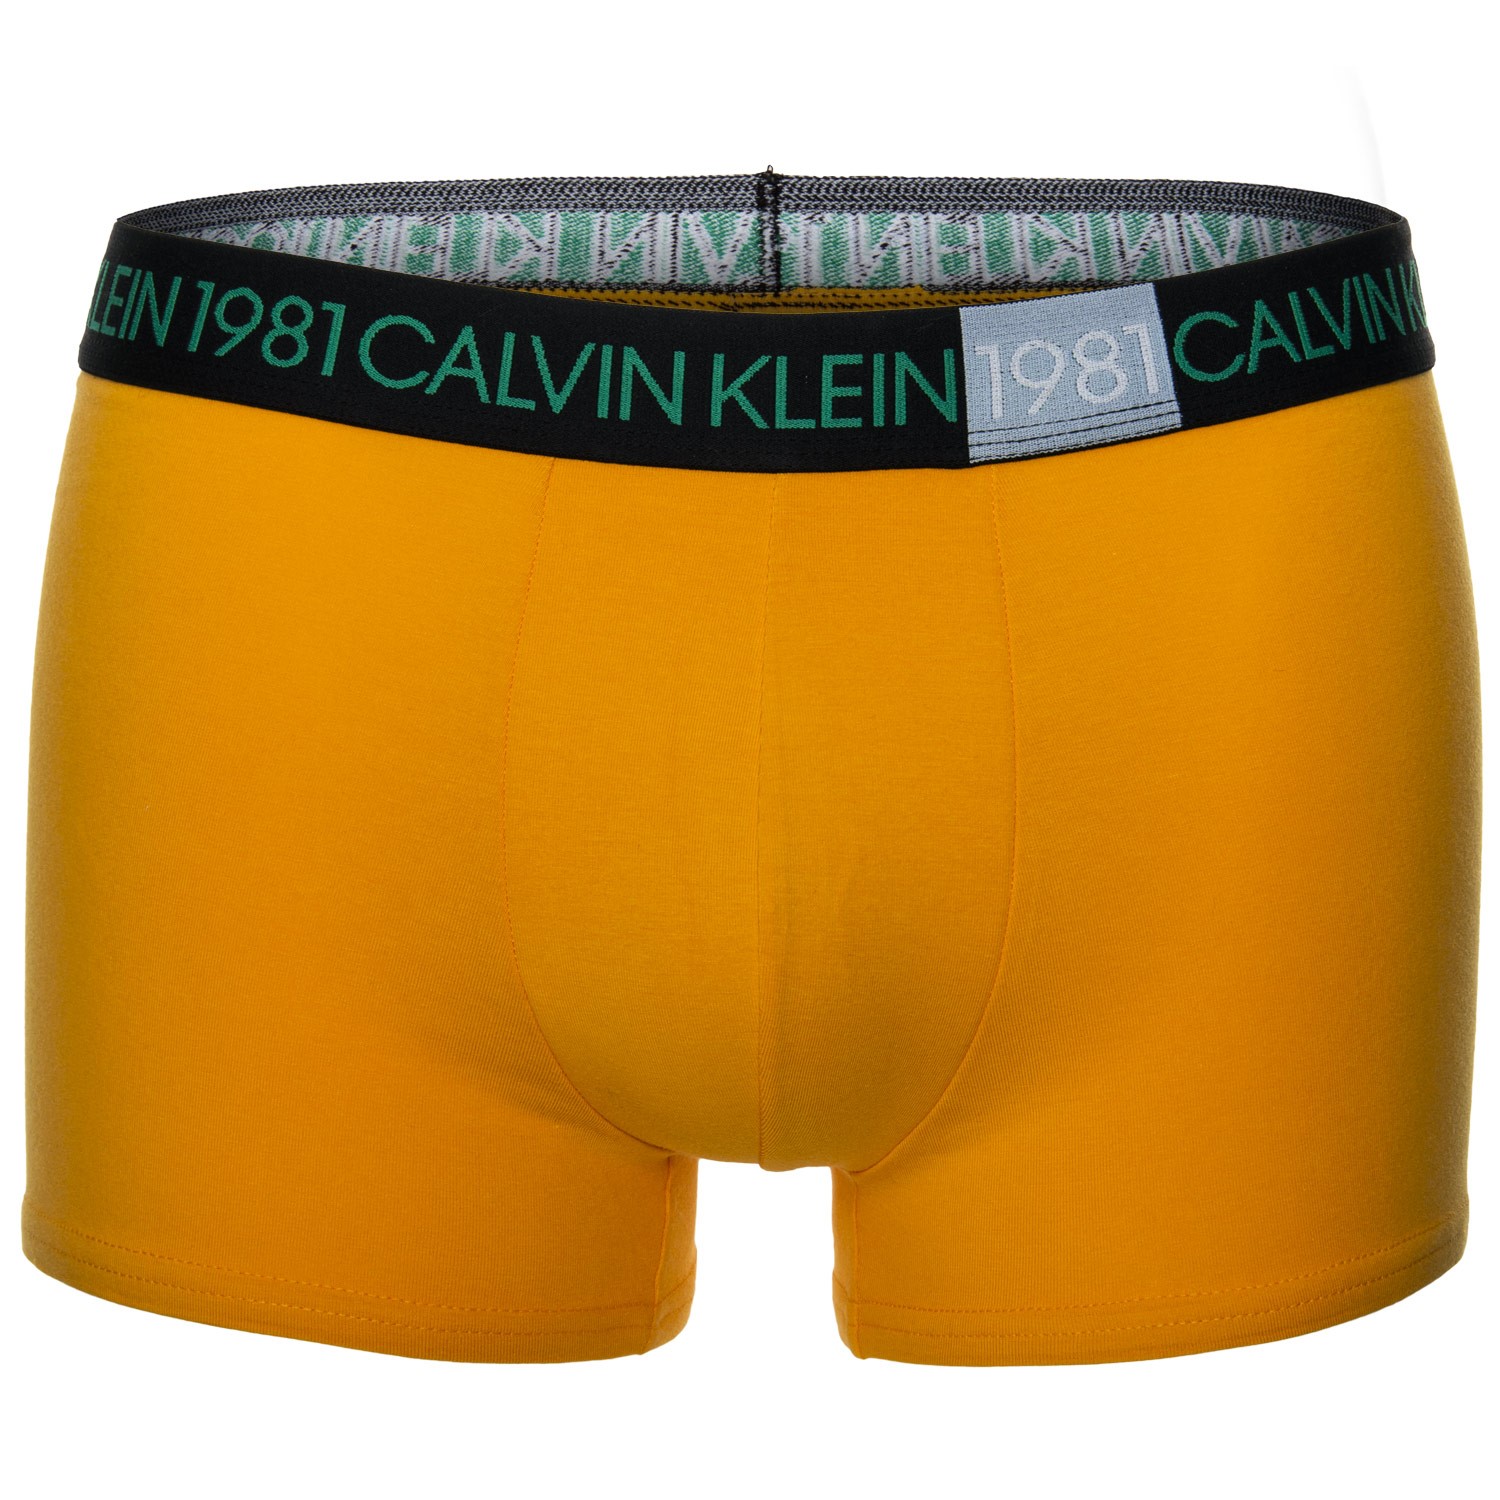 Calvin Klein 1981 Bold Trunk